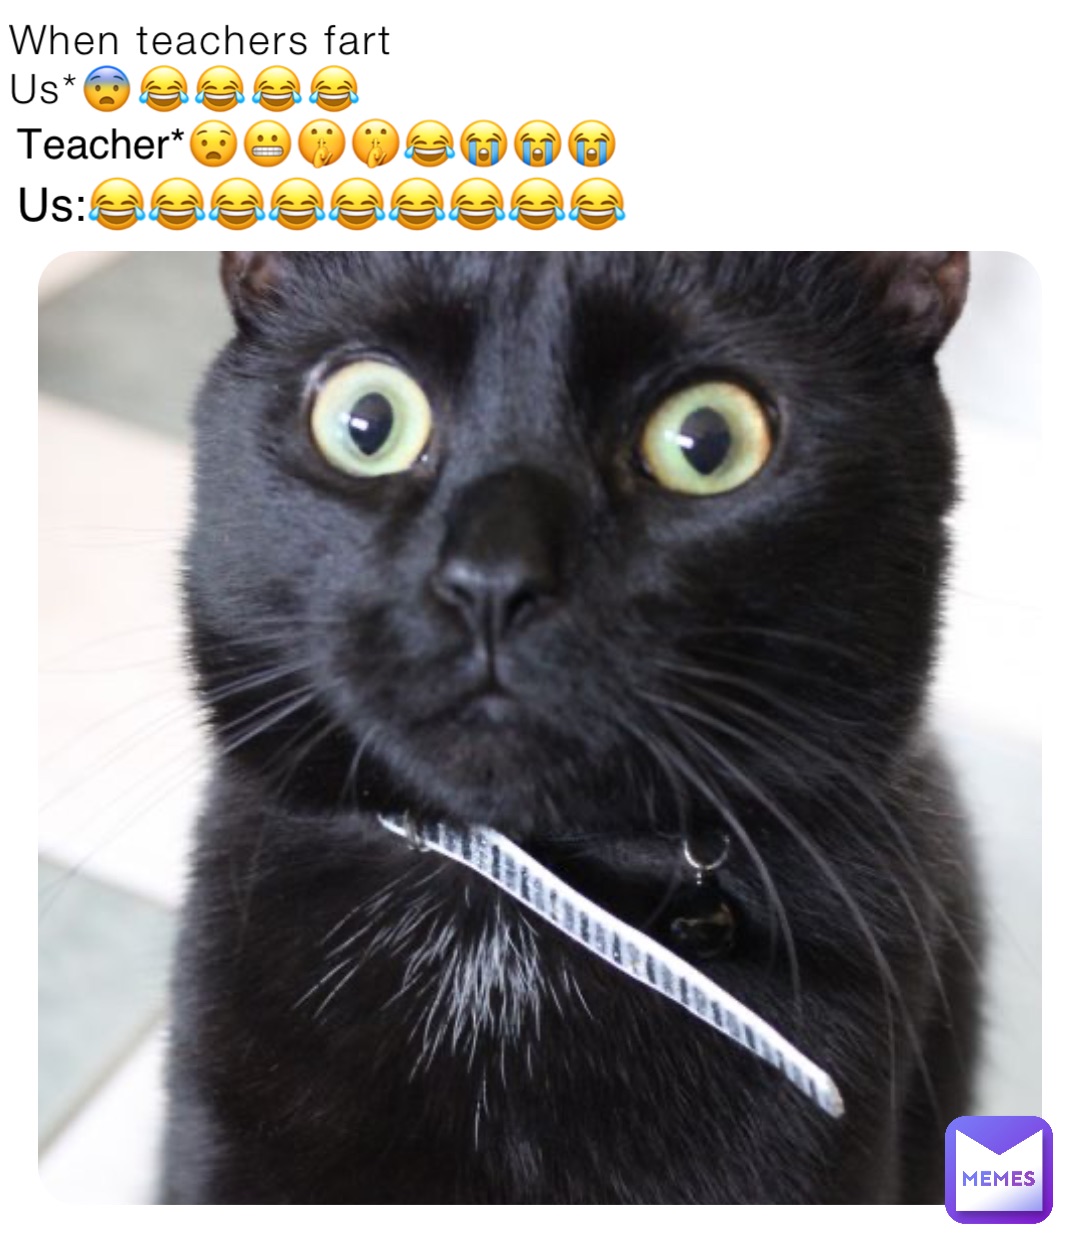 When teachers fart
Us*😨😂😂😂😂 Teacher*😧😬🤫🤫😂😭😭😭 Us:😂😂😂😂😂😂😂😂😂